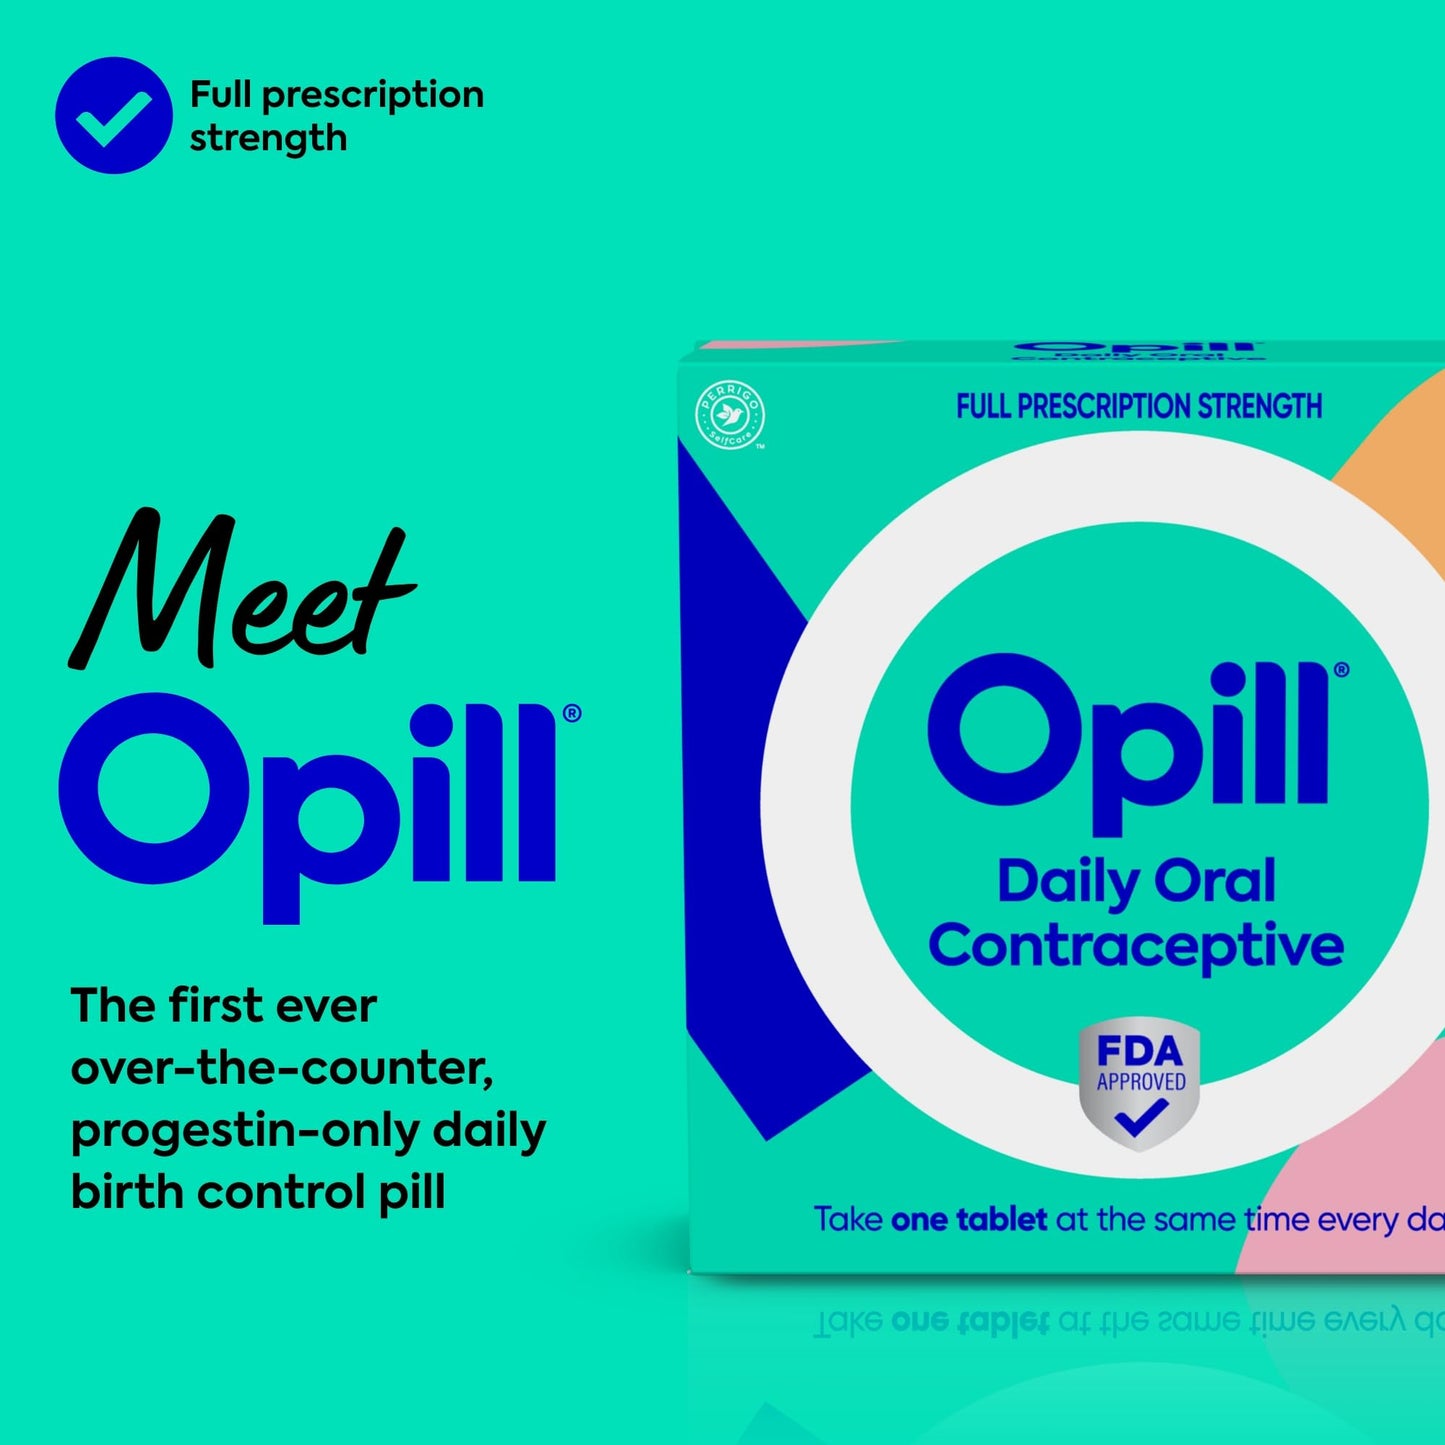 Opill Daily Oral Contraceptive, Birth Control Pill, Full Prescription Strength, No Prescription Needed, 28 Count